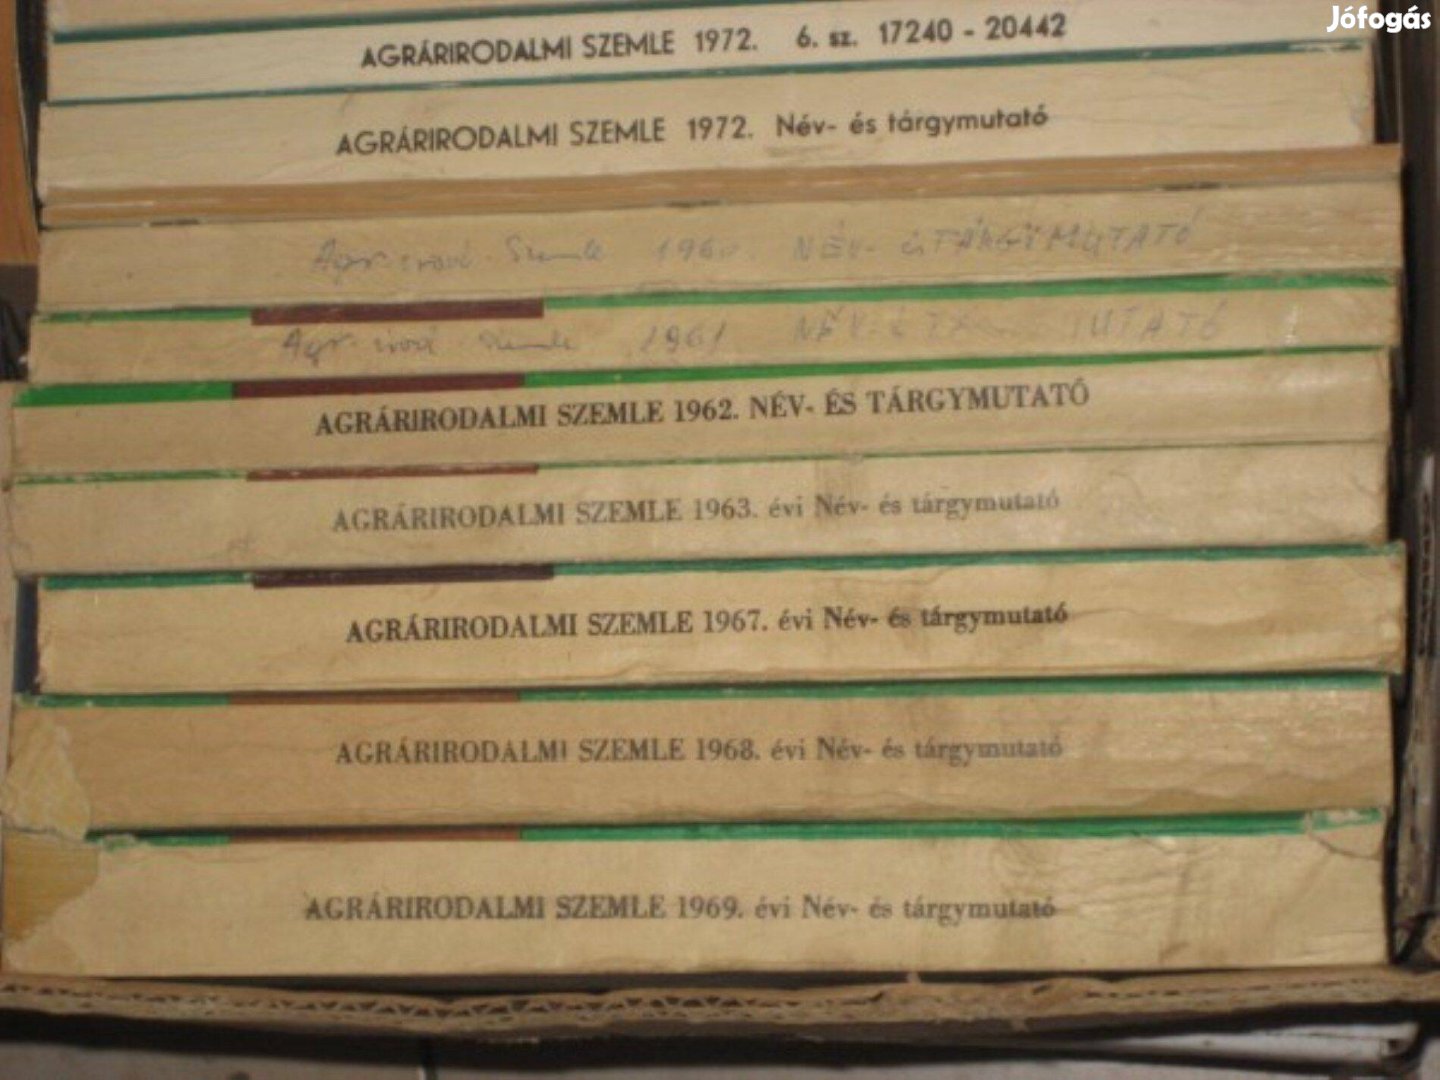 Agrárirodalmi szemle név- és tárgymutató 1960-63 és 67-69